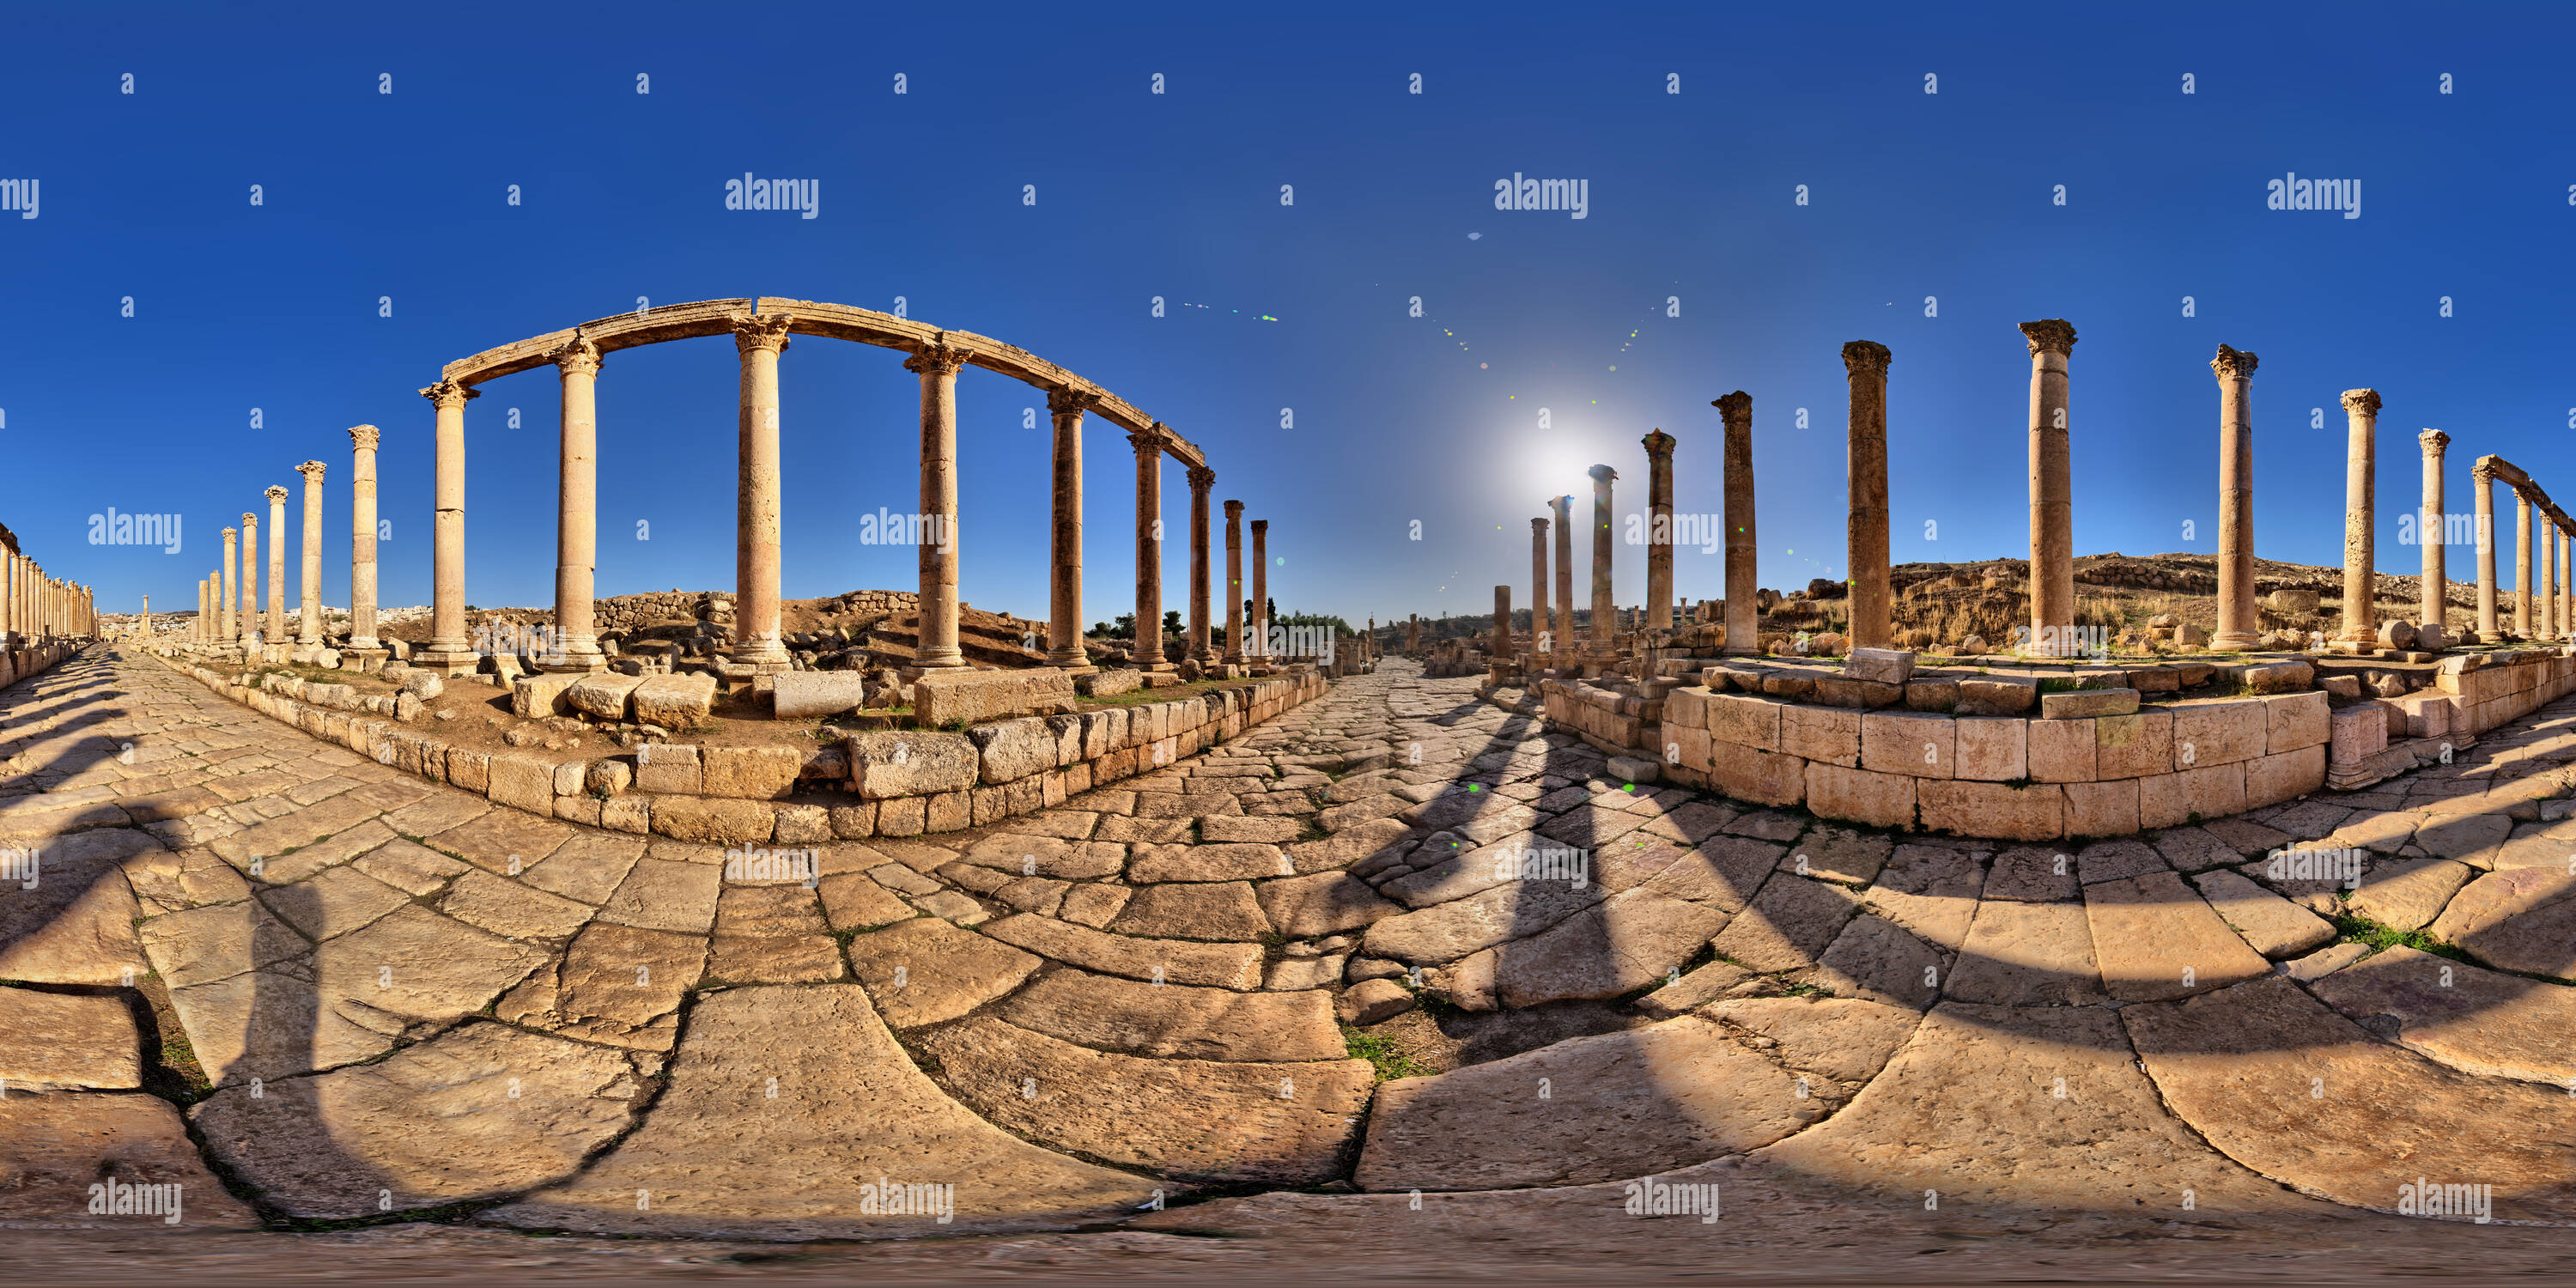 Vue panoramique à 360° de La rue principale de la ville romaine de Jerash, Jordanie